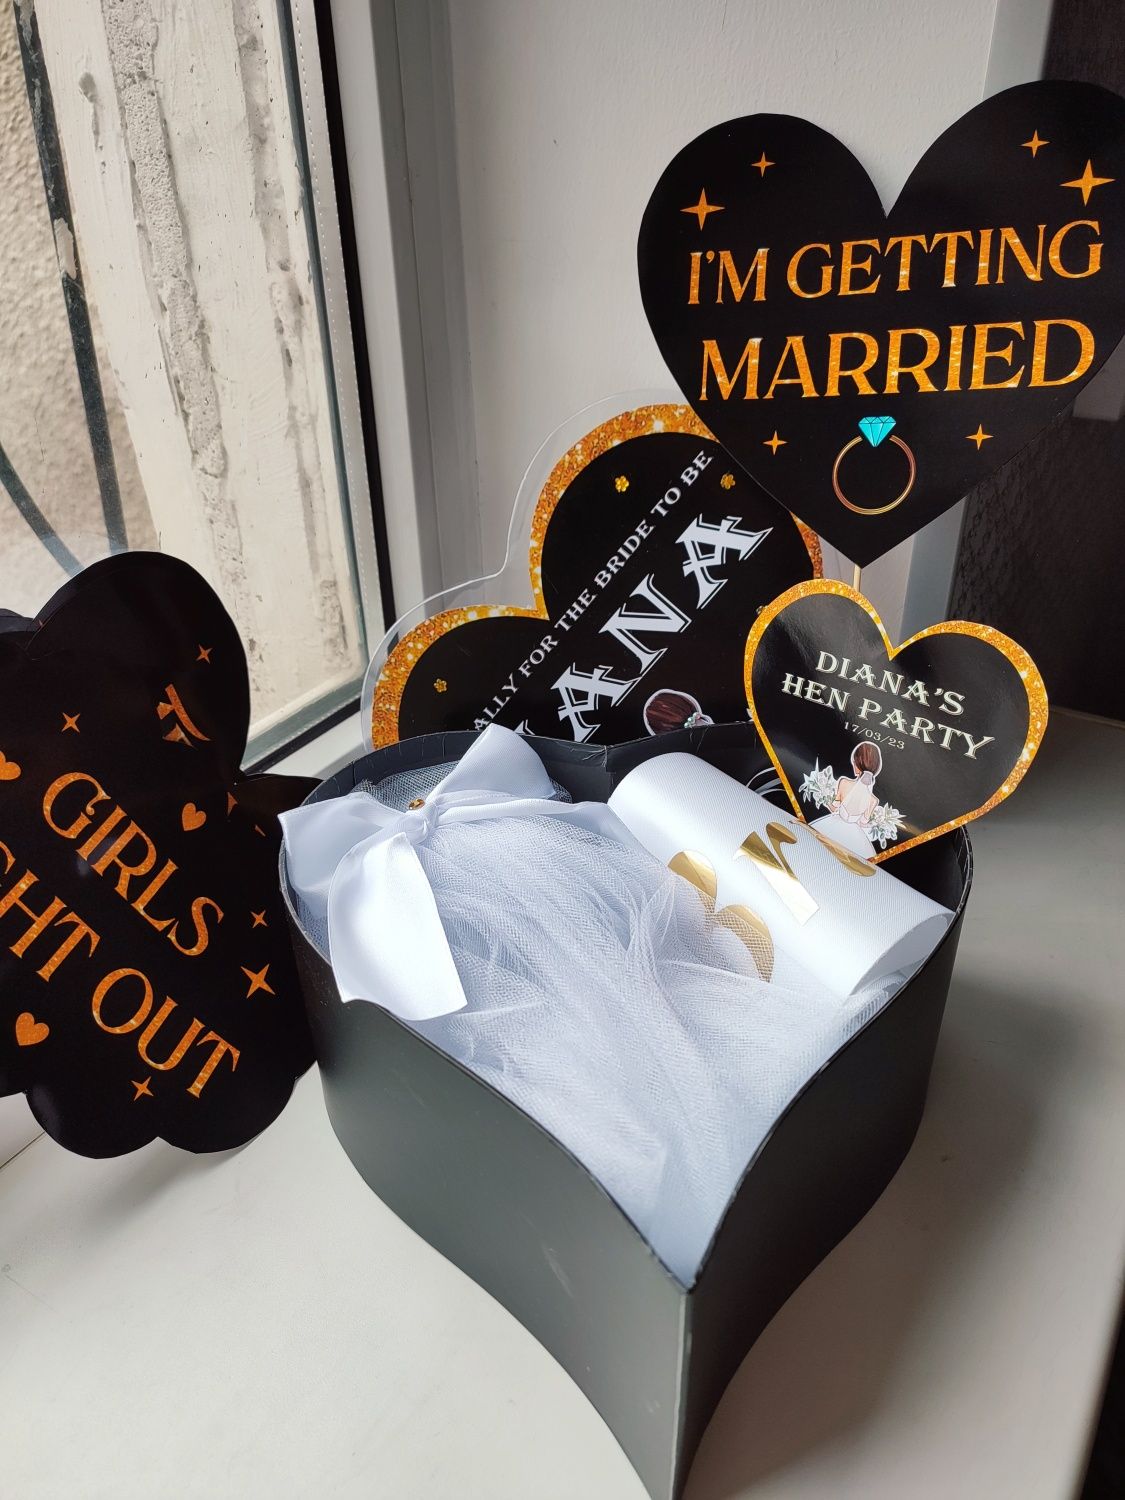 Bride box for hen party, набор невесты для девичника